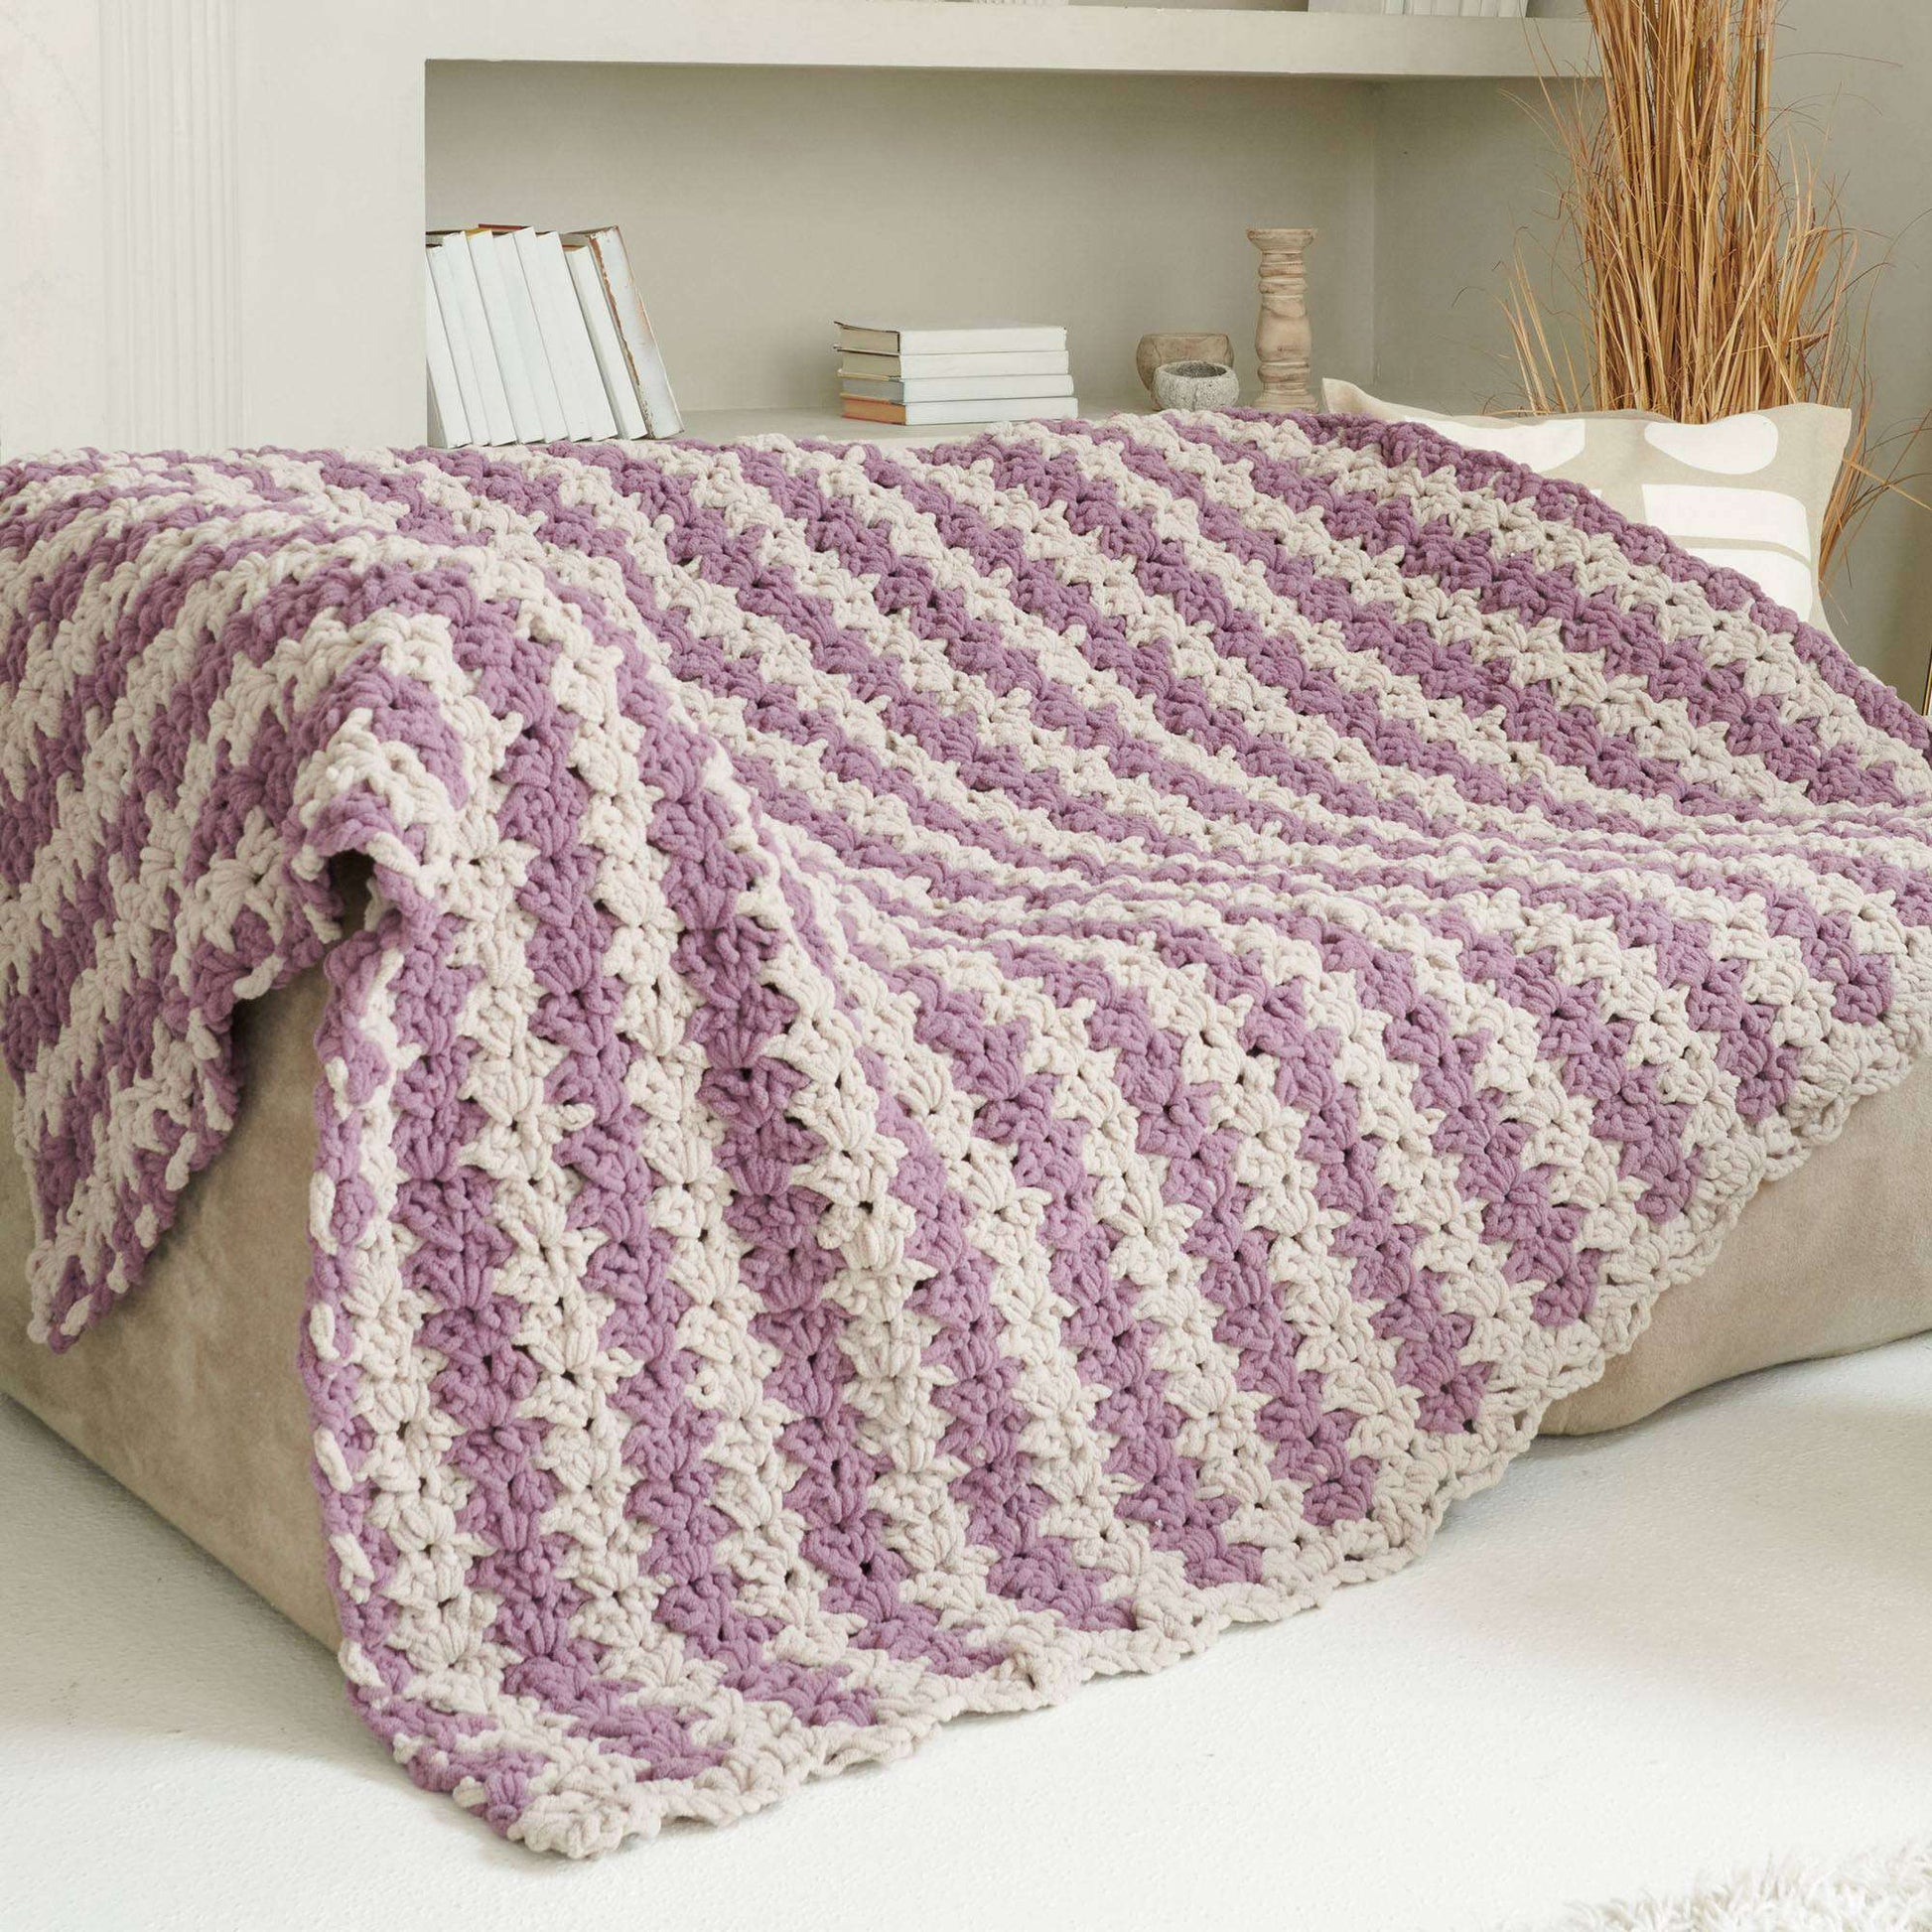 Free Bernat Simply Soothing Crochet Blanket Pattern